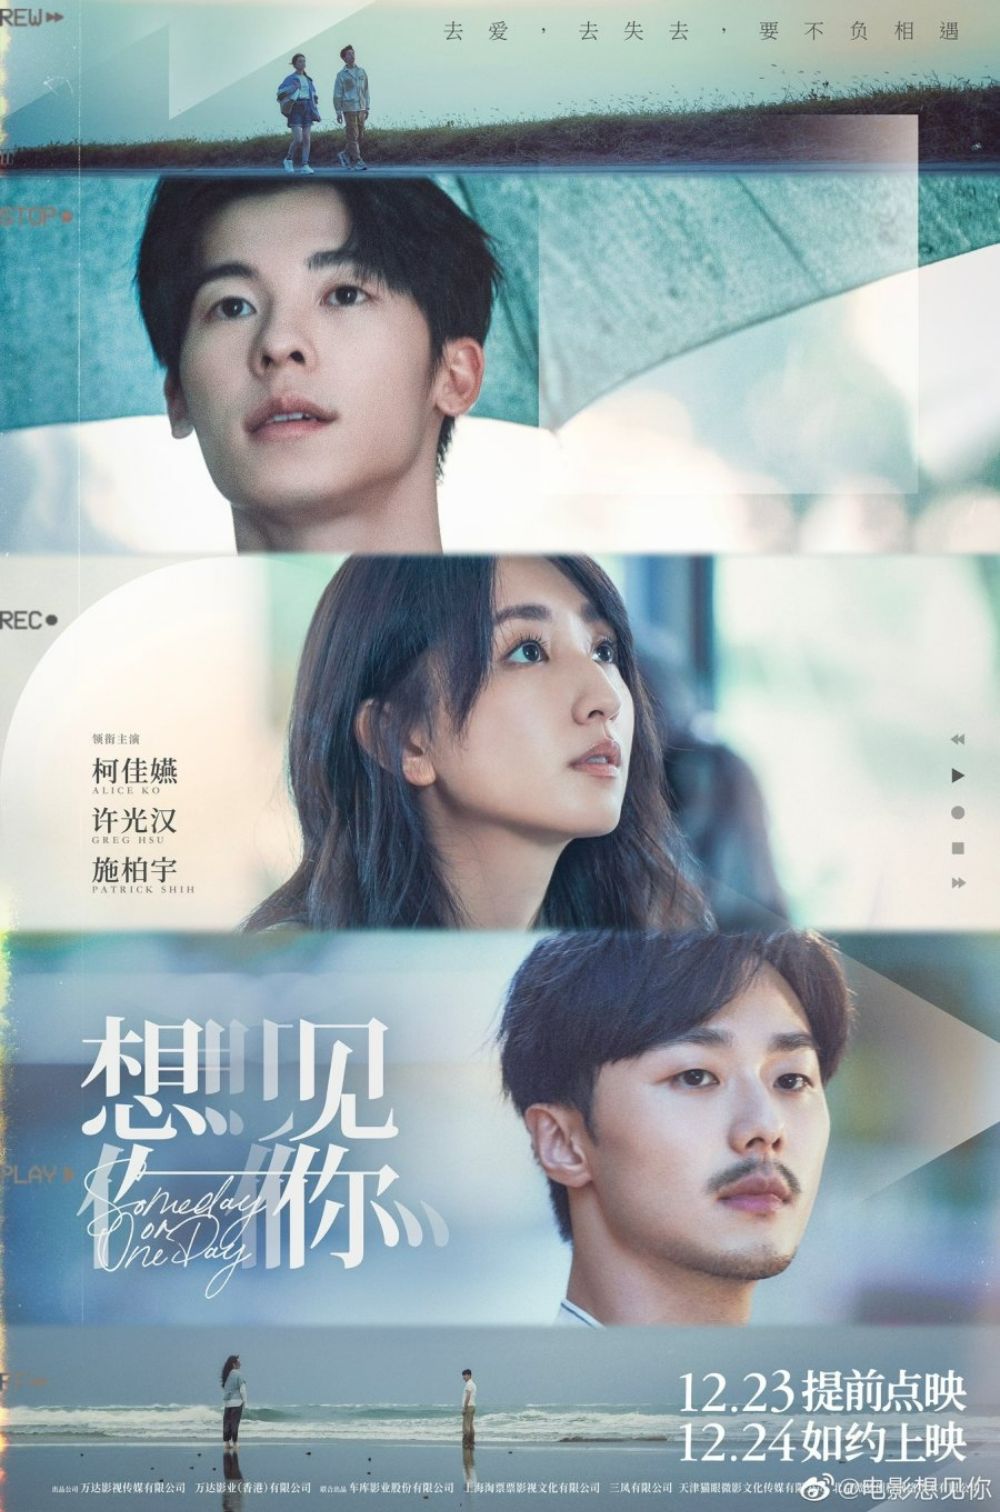 Trong phim điện ảnh Muốn Gặp Anh (Someday or One Day), bộ ba diễn viên Hứa Quang Hán, Kha Giai Yến và Thi Bá Vũ tiếp tục có màn thể hiện thành công